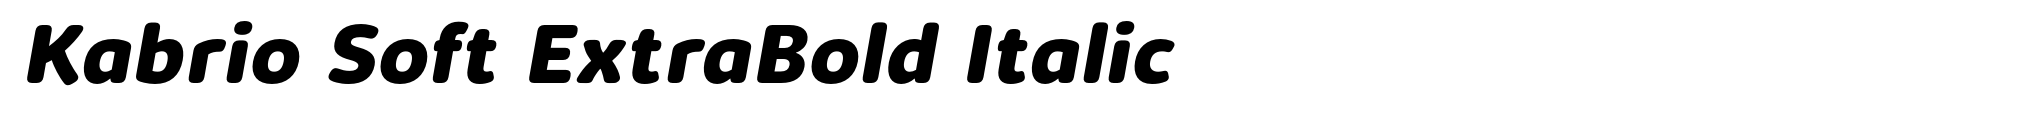 Kabrio Soft ExtraBold Italic image